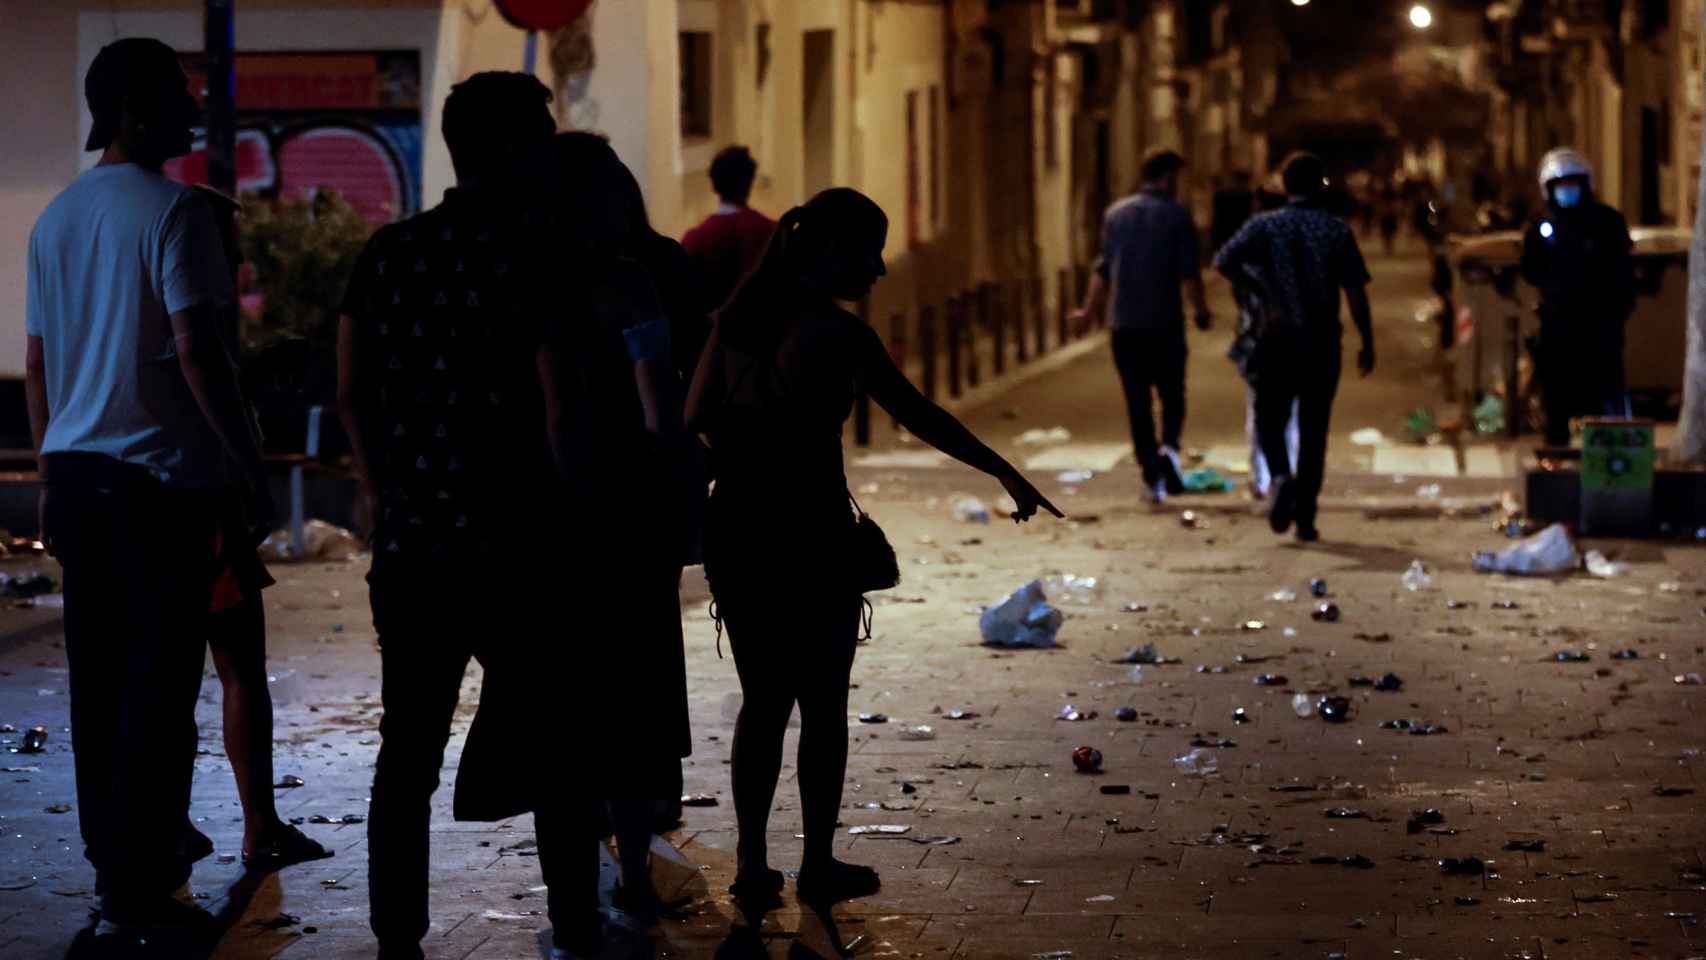 La Guardia Urbana de Barcelona desaloja por aglomeraciones las plazas del barrio Gràcia durante sus fiestas / EFE - Quique García